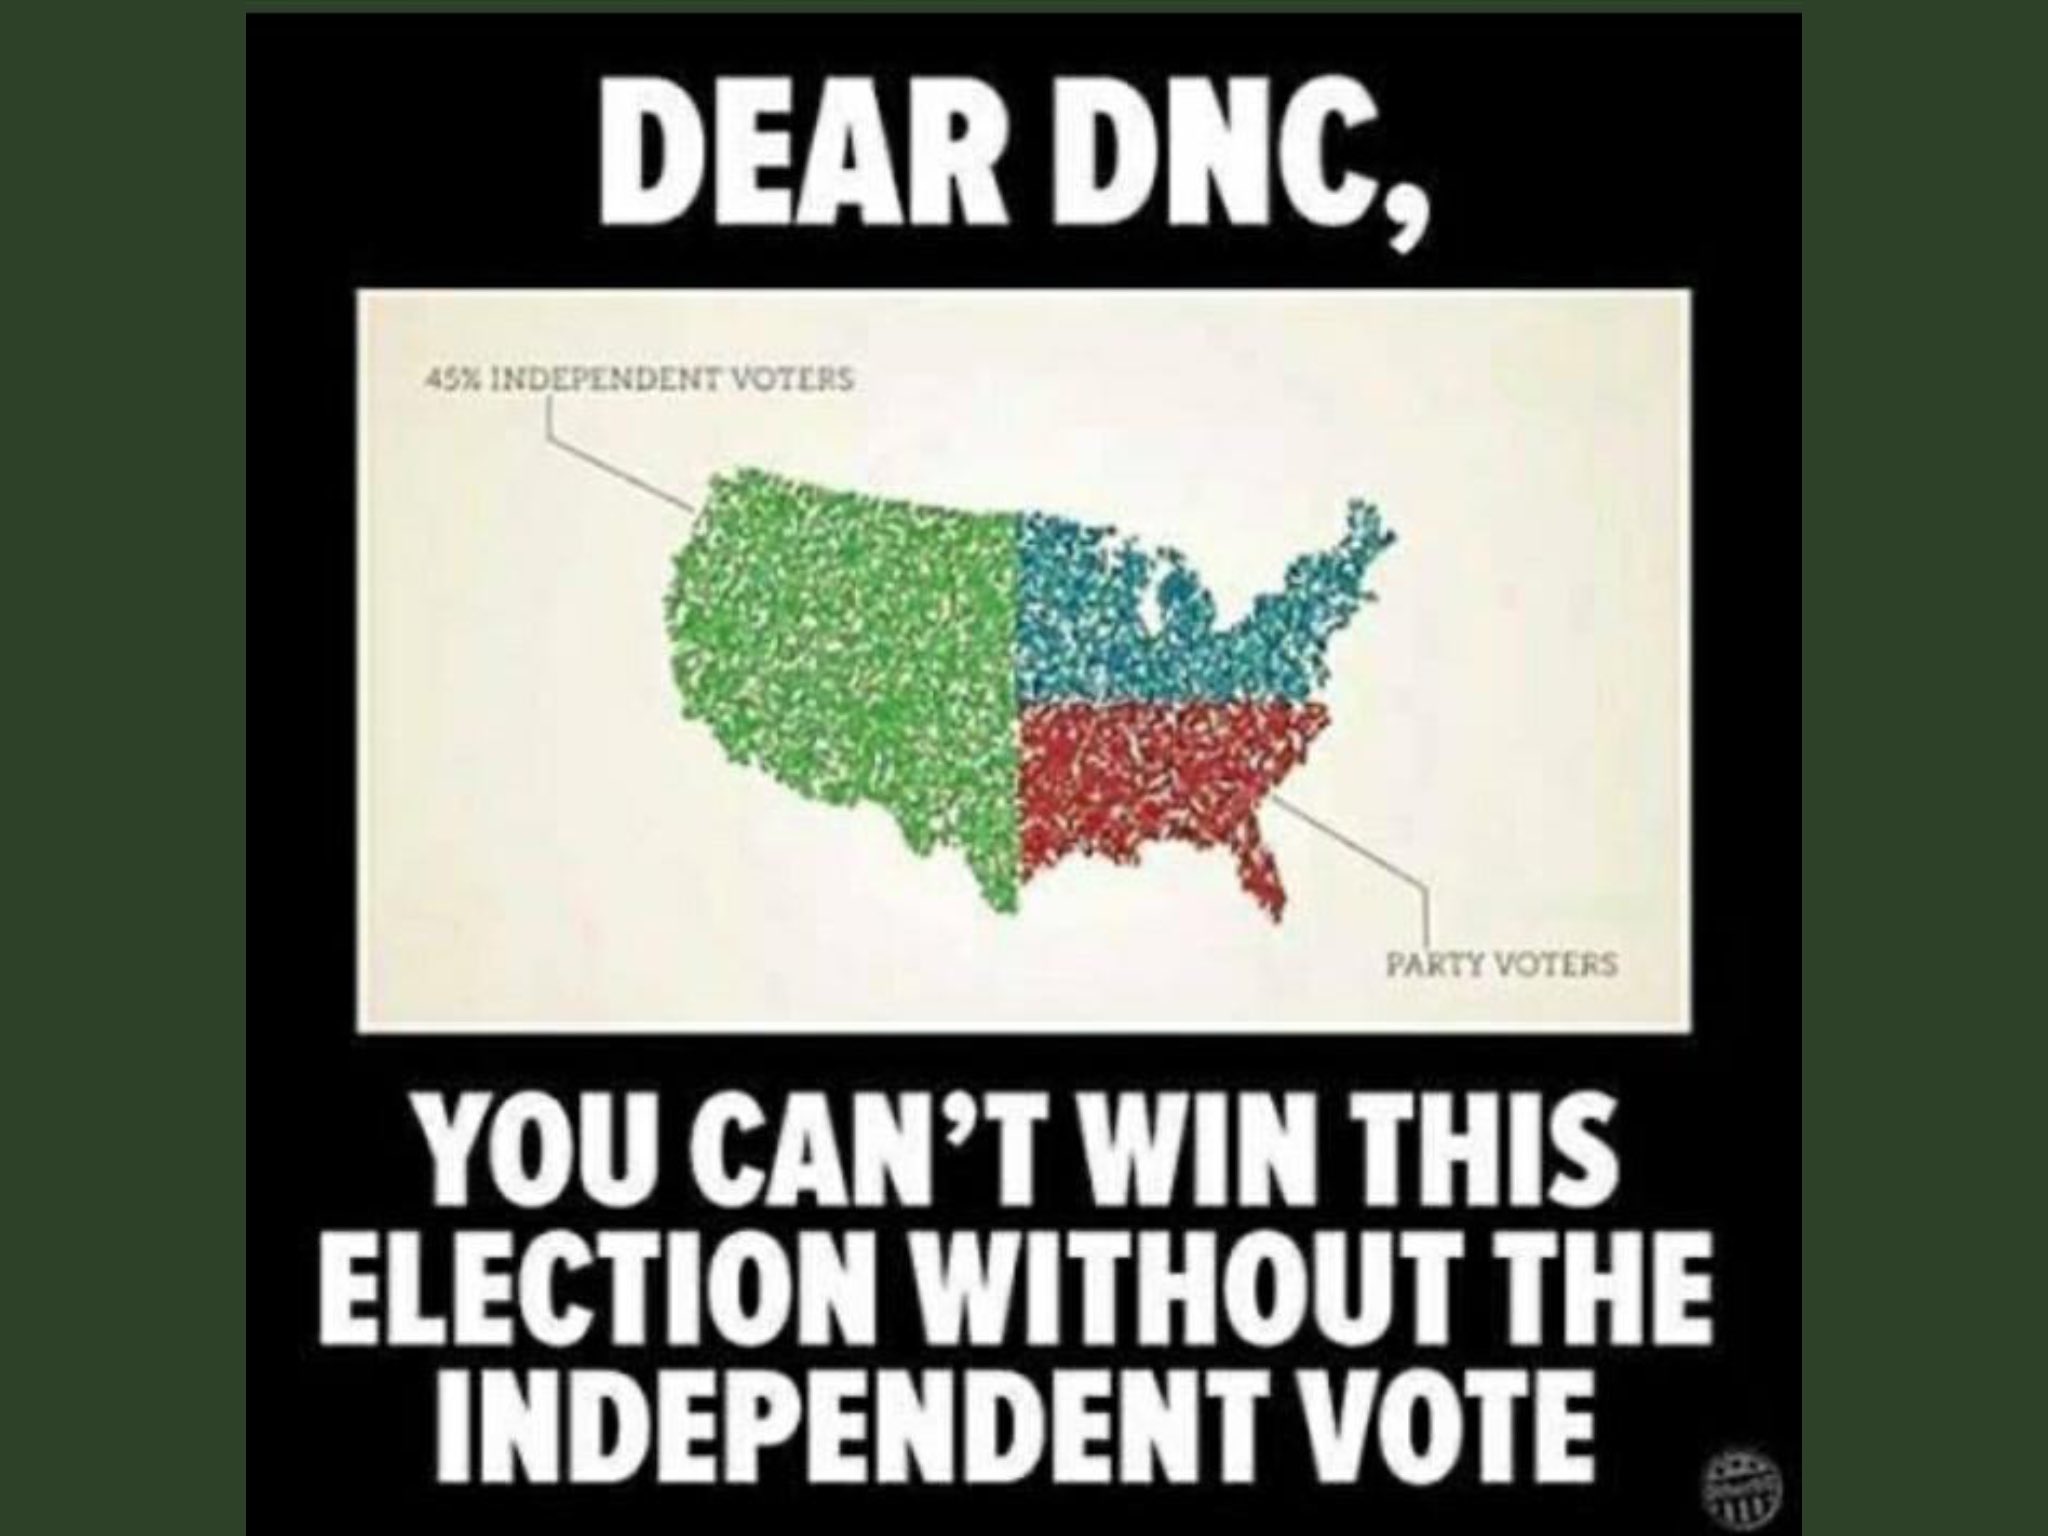 Independent voters